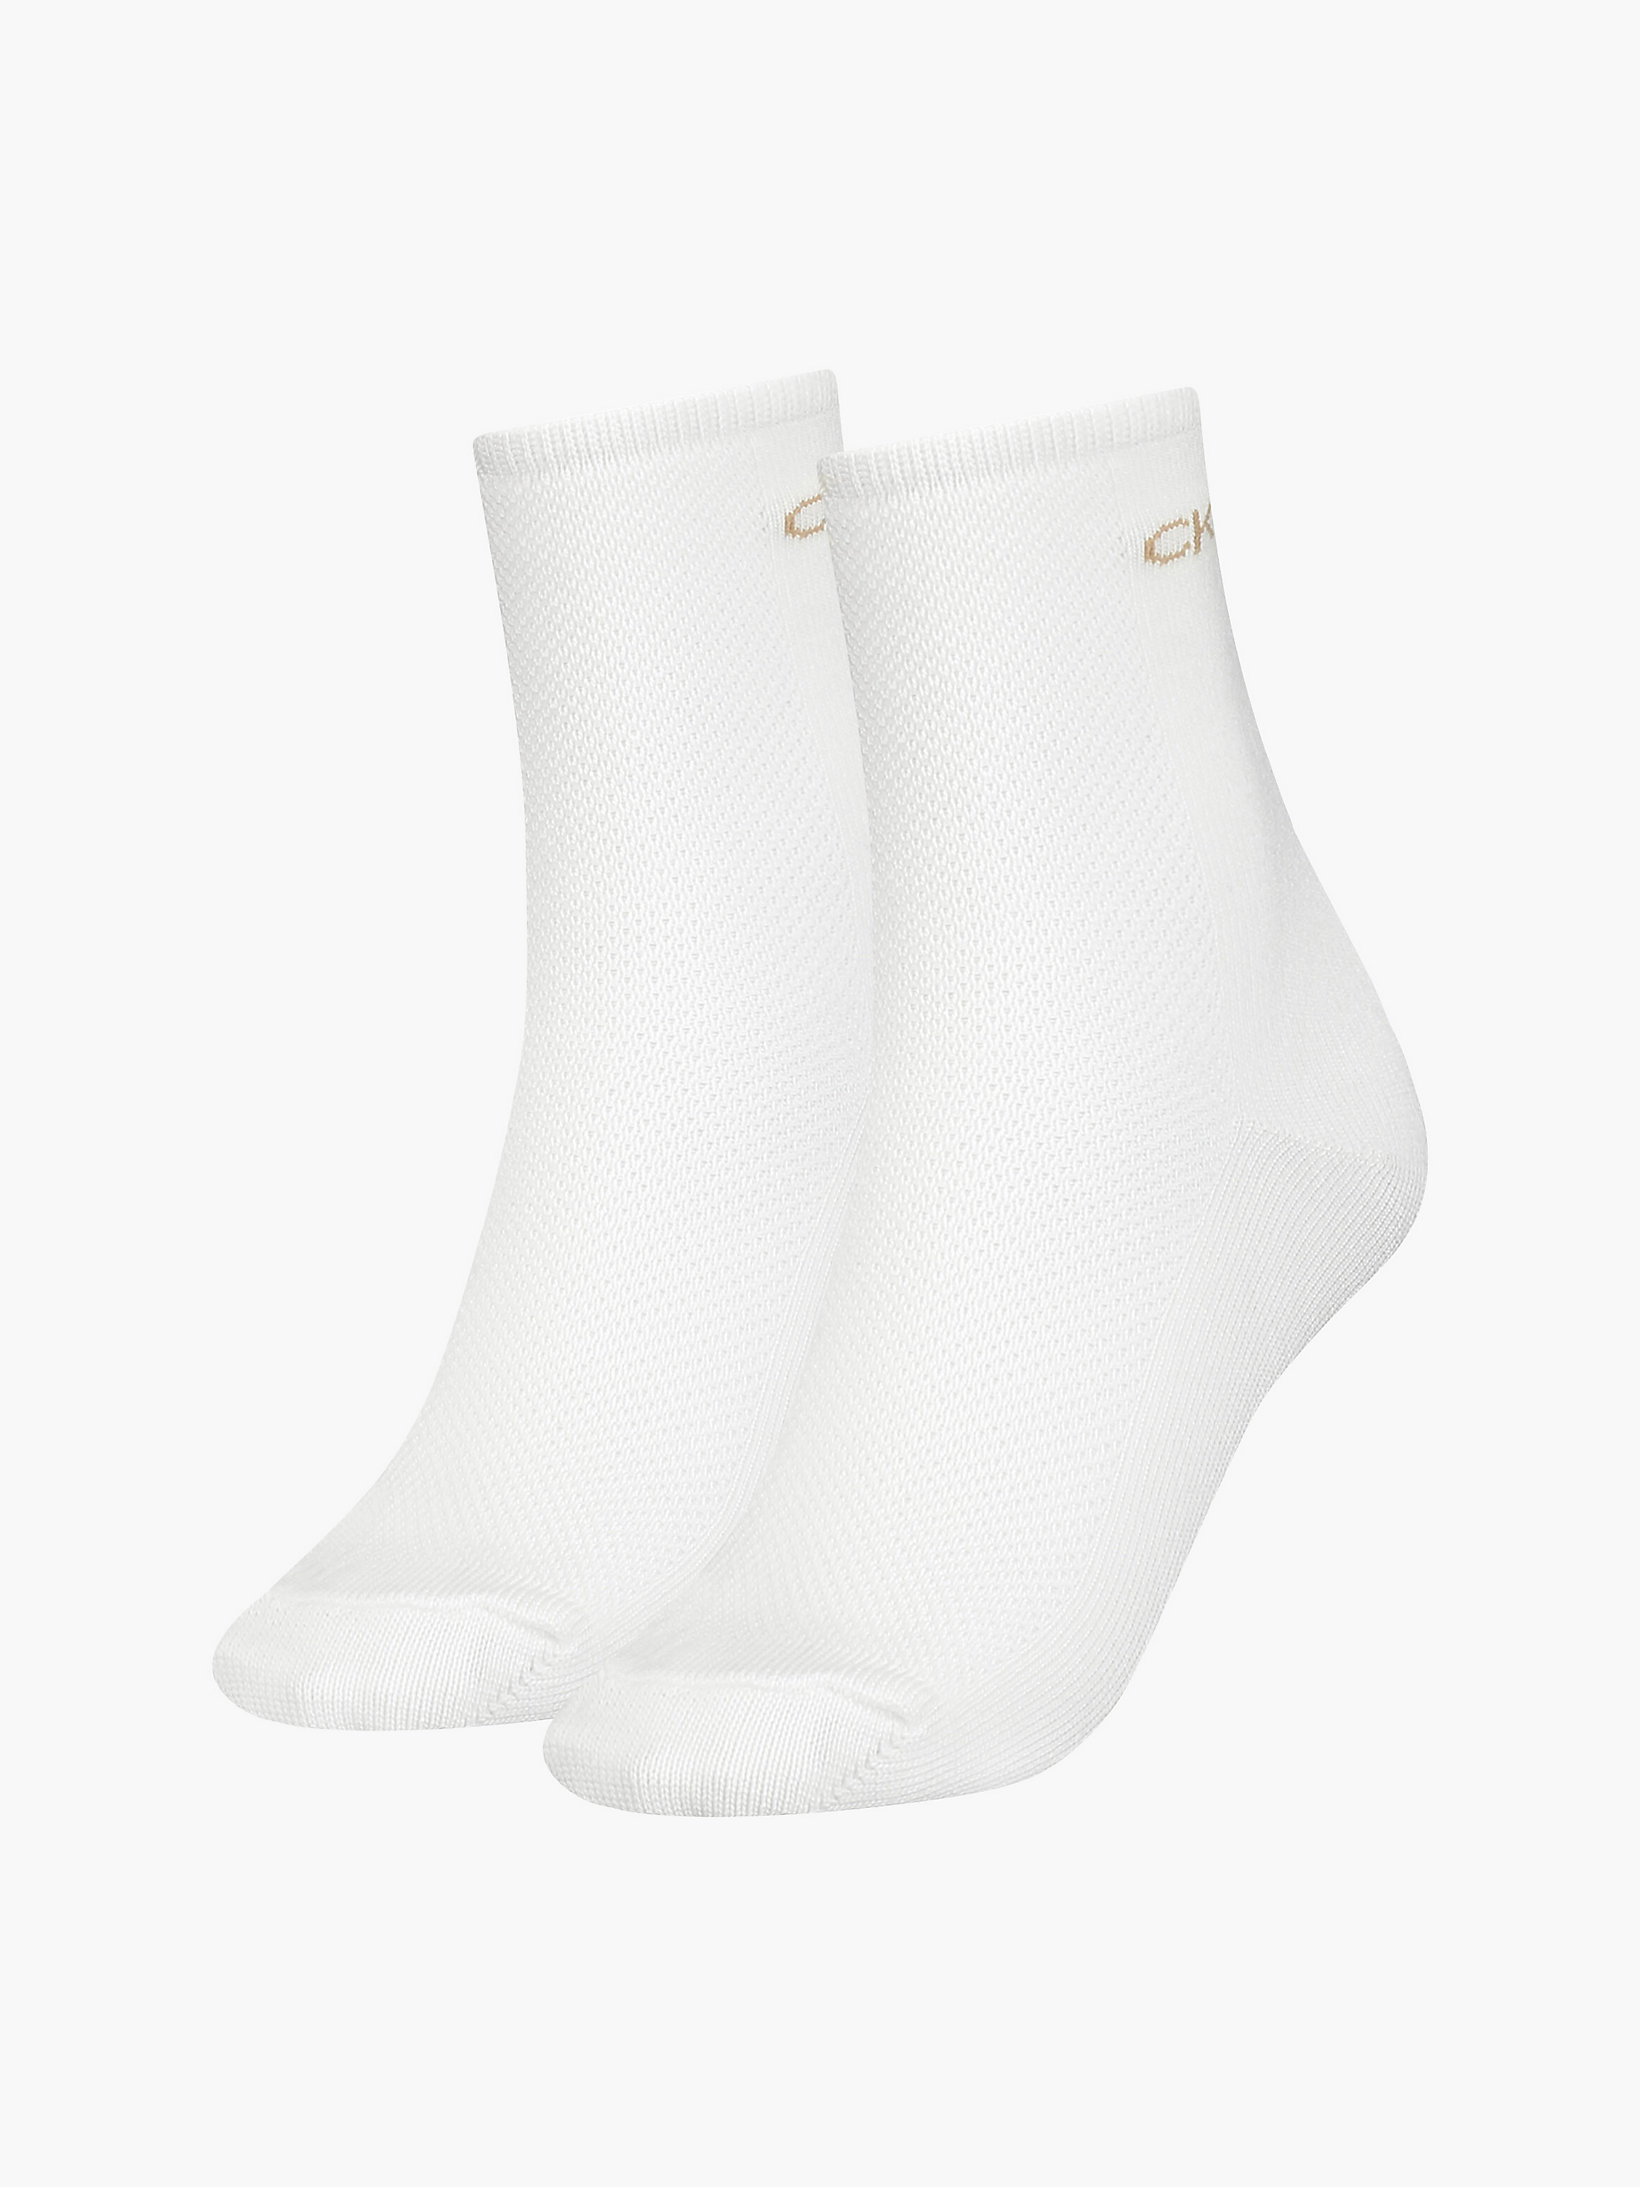 White 2 Pack Ankle Socks undefined women Calvin Klein